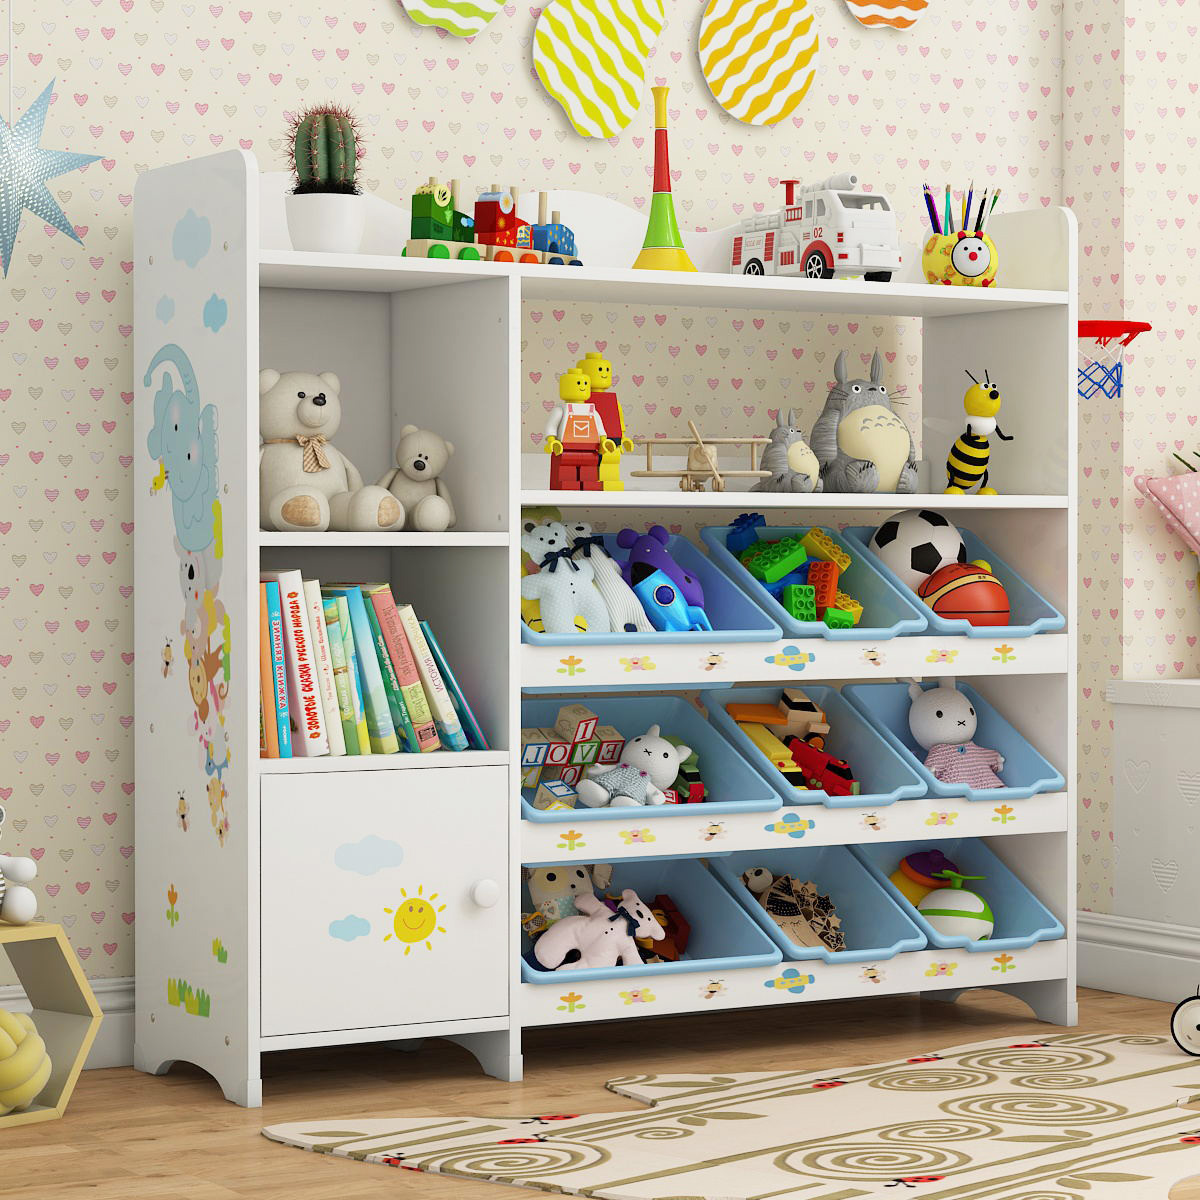 芃菲特 儿童玩具收纳架宝宝书架绘本架 玩具架子置物架多层收纳柜